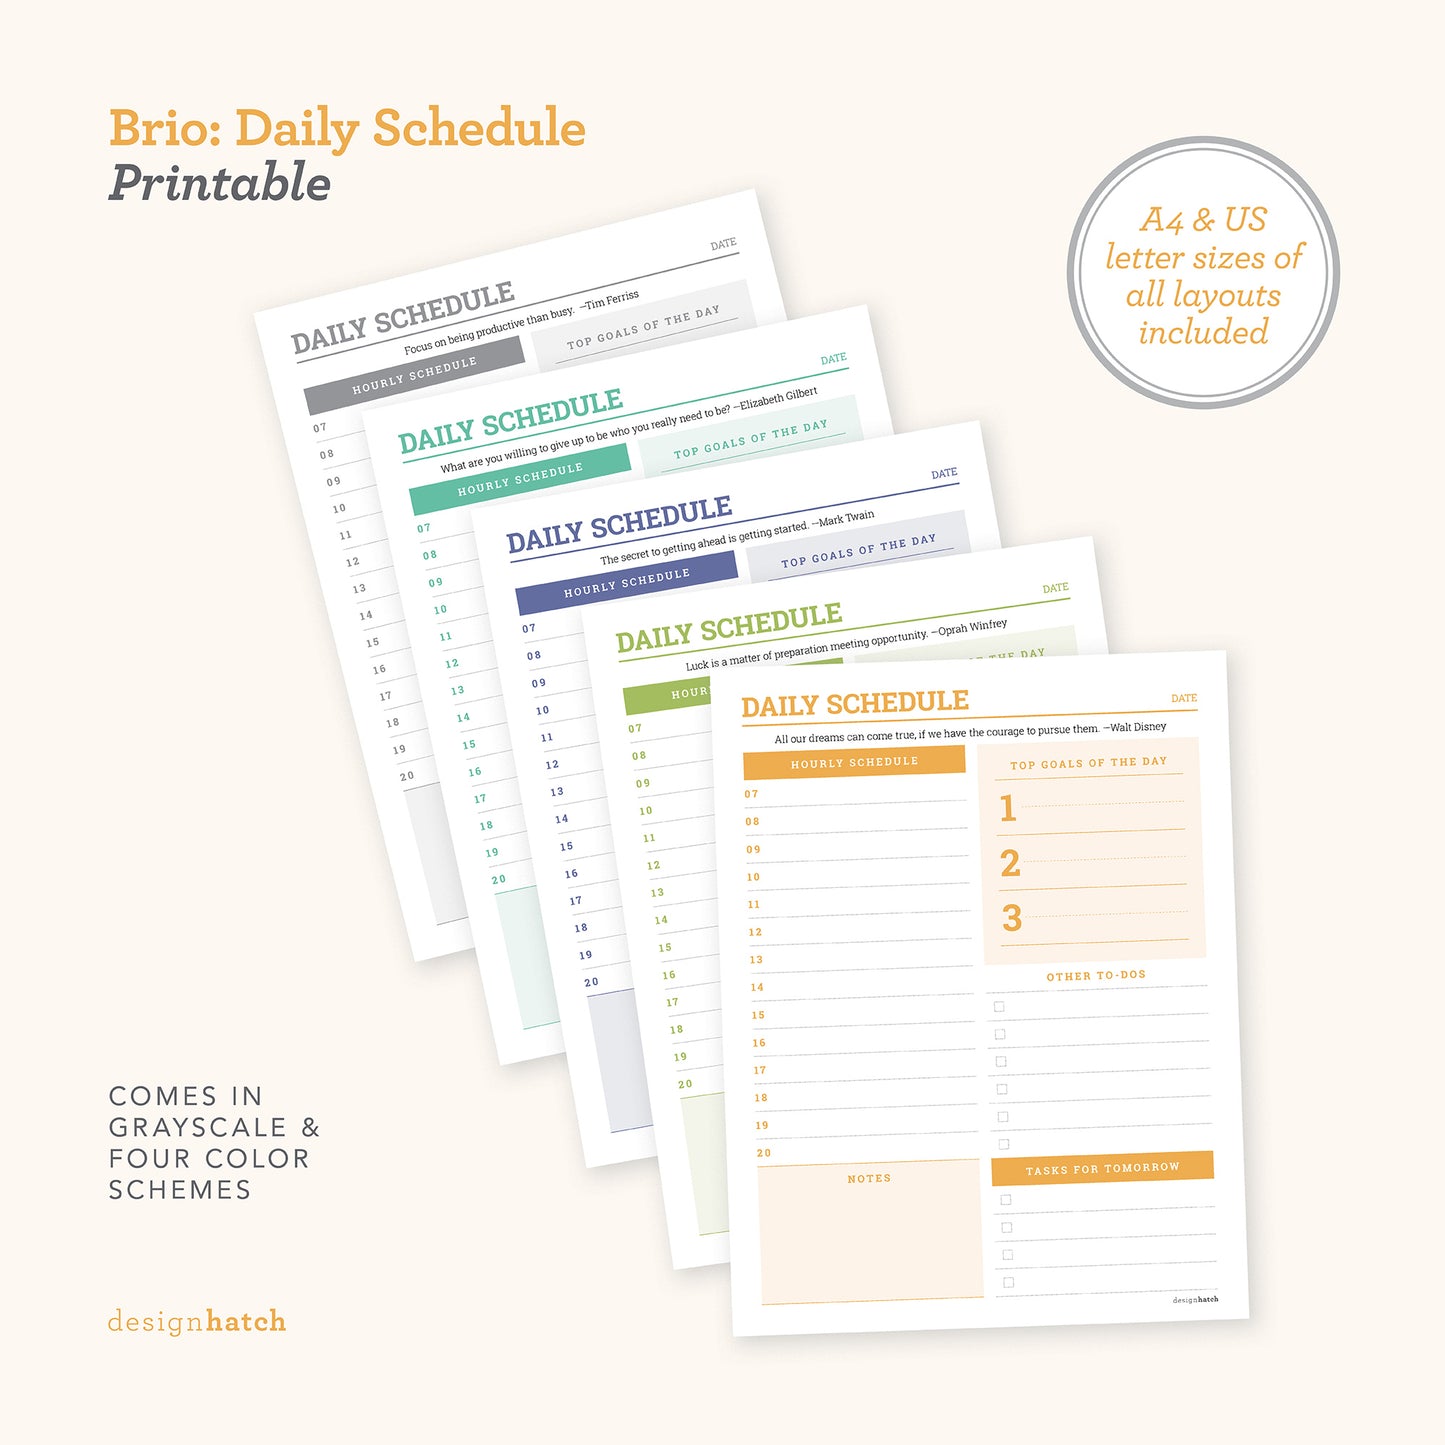 Brio: Daily Schedule